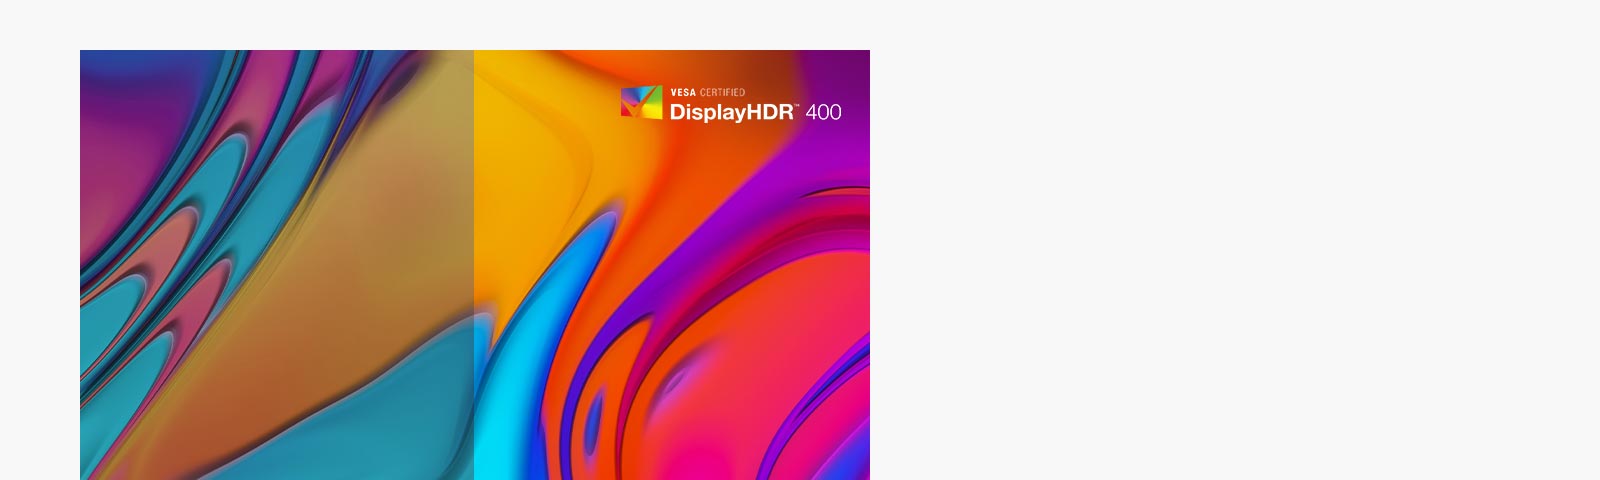 Der Monitor unterstützt VESA DisplayHDR™ 400 mit einem vielfältigen Helligkeits- und Kontrastbereich und ermöglicht ein intensives Eintauchen in die neuesten HDR-Spiele, -Filme und -Bilder.